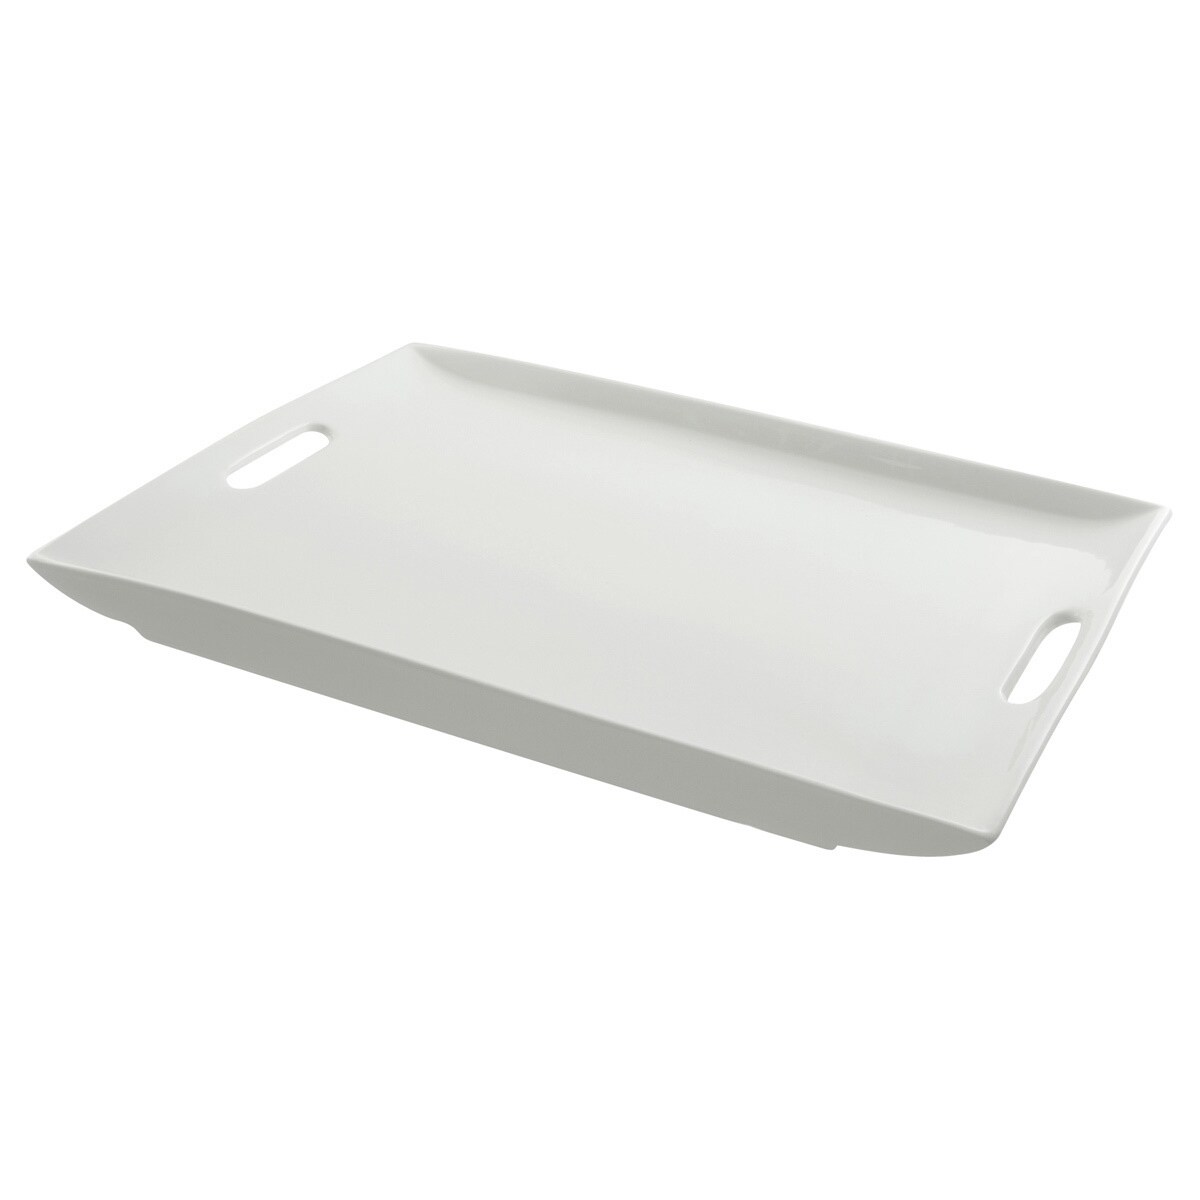 white rectangle platter